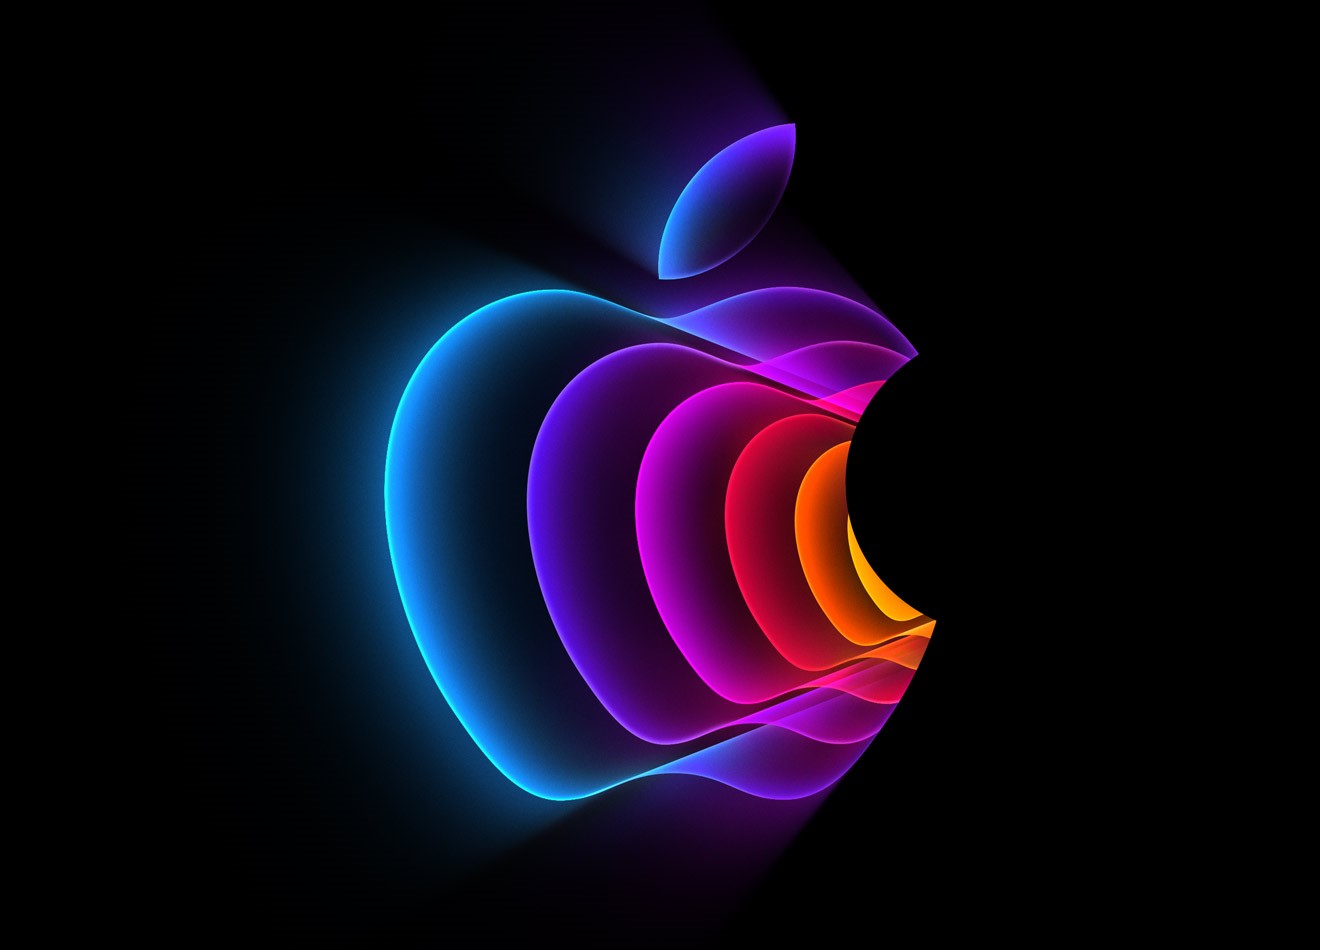 Apple lädt am 8. März zur Produktevorstellung